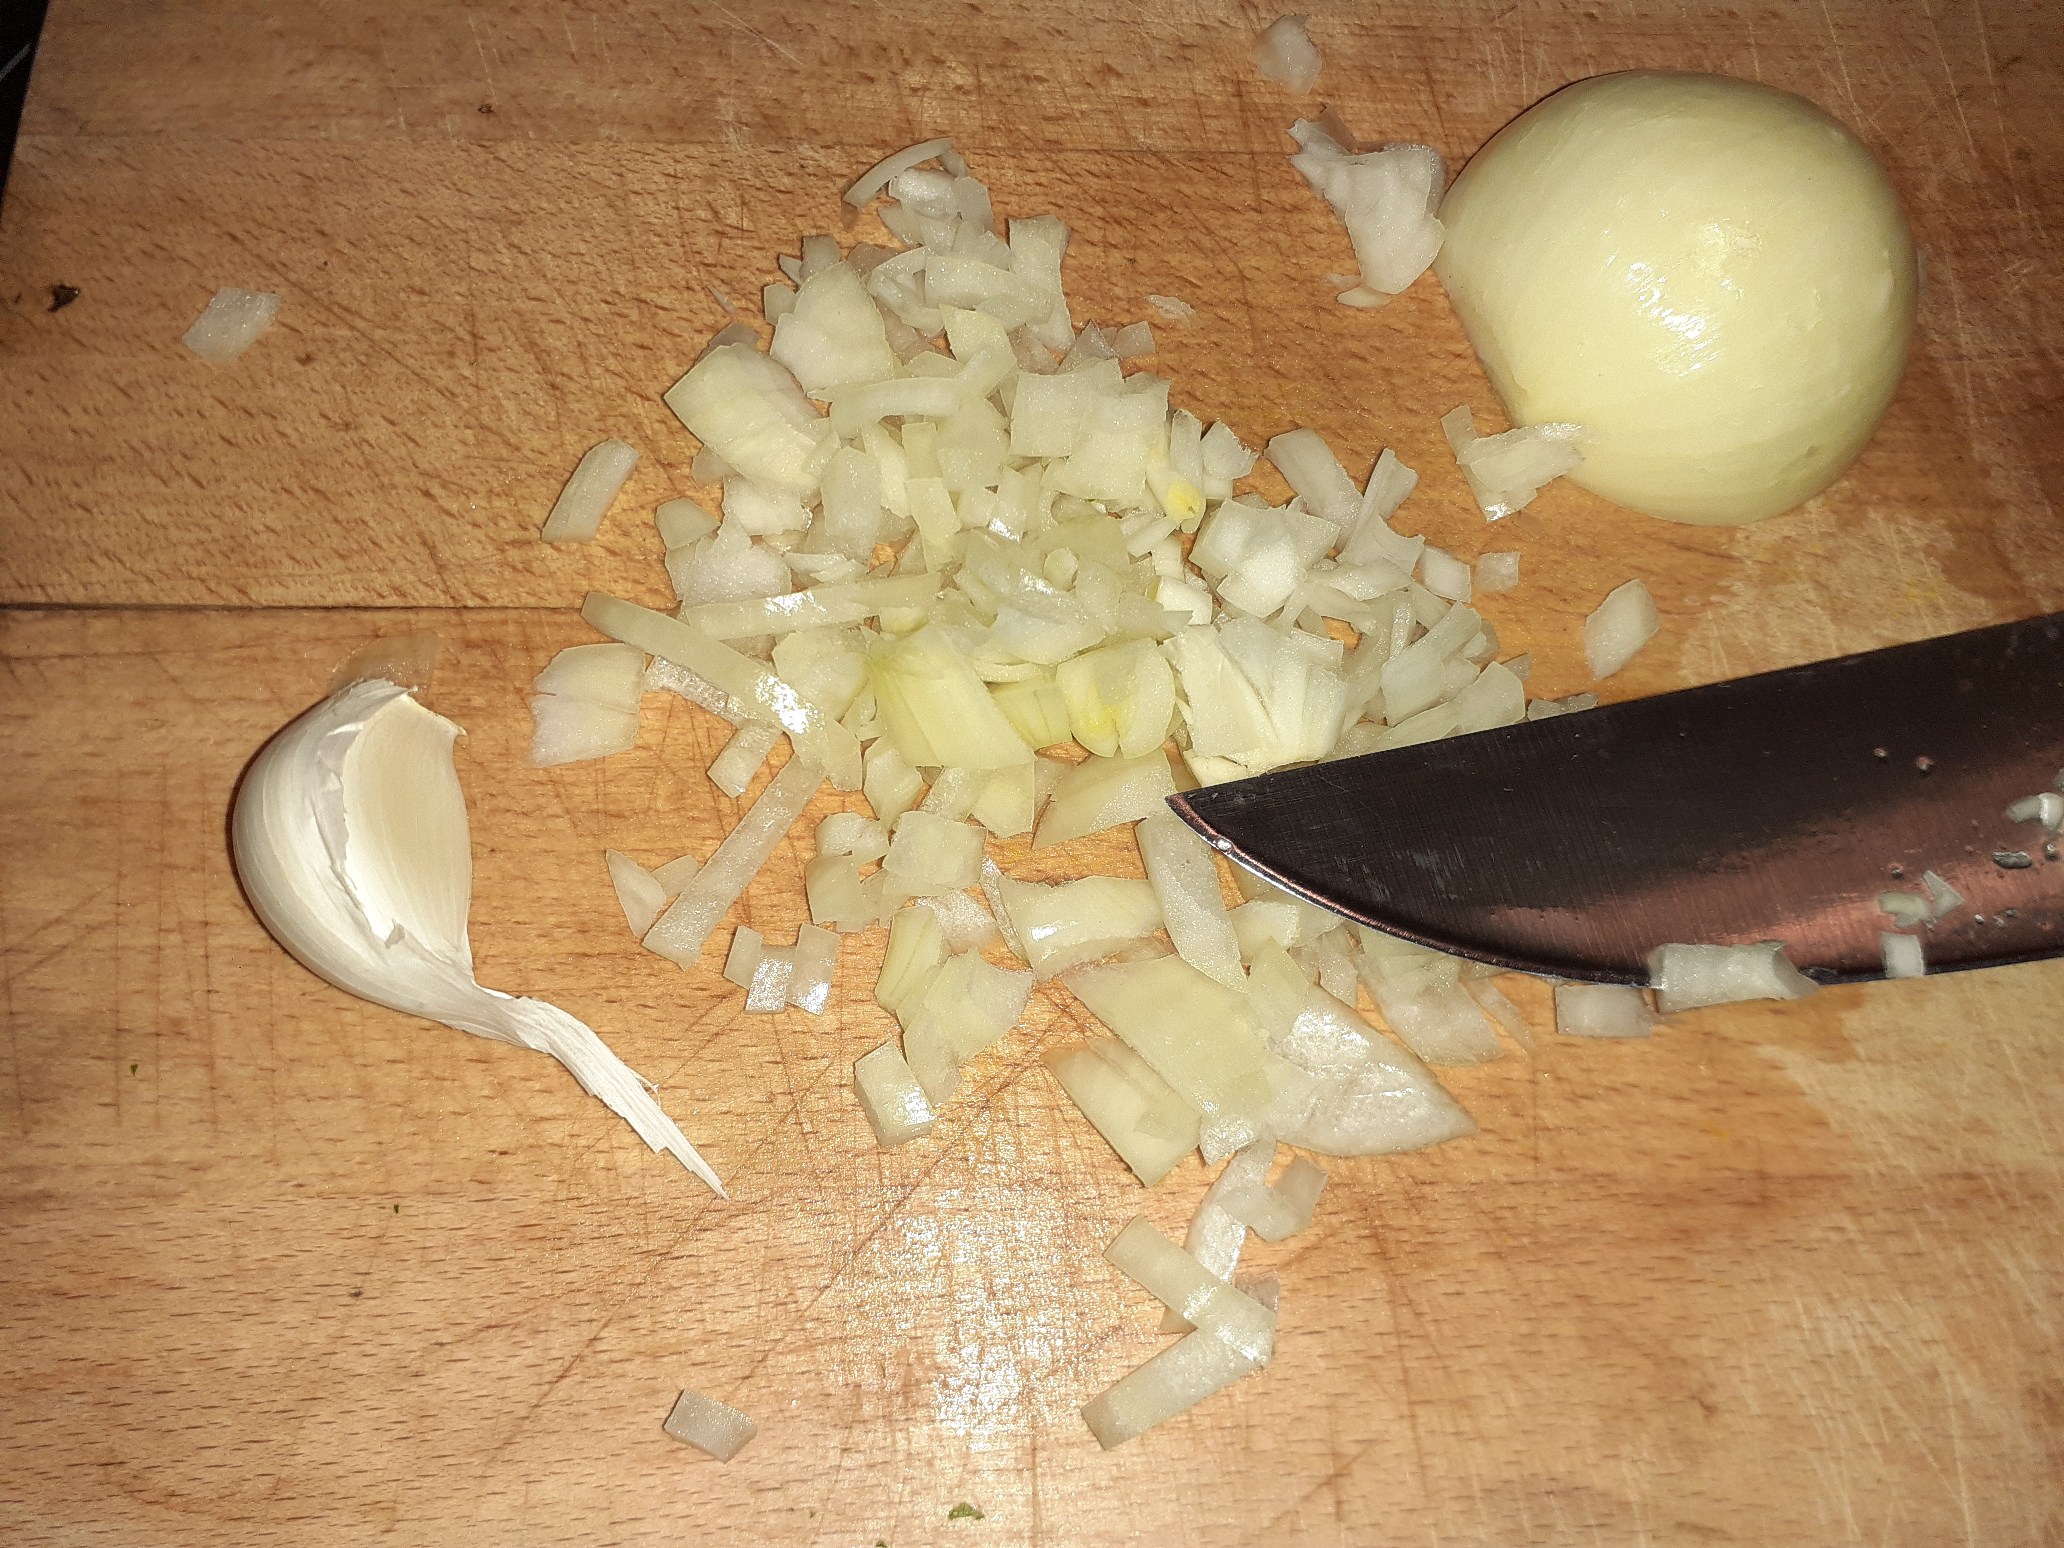 Zwiebeln würfeln und Knoblauch hacken